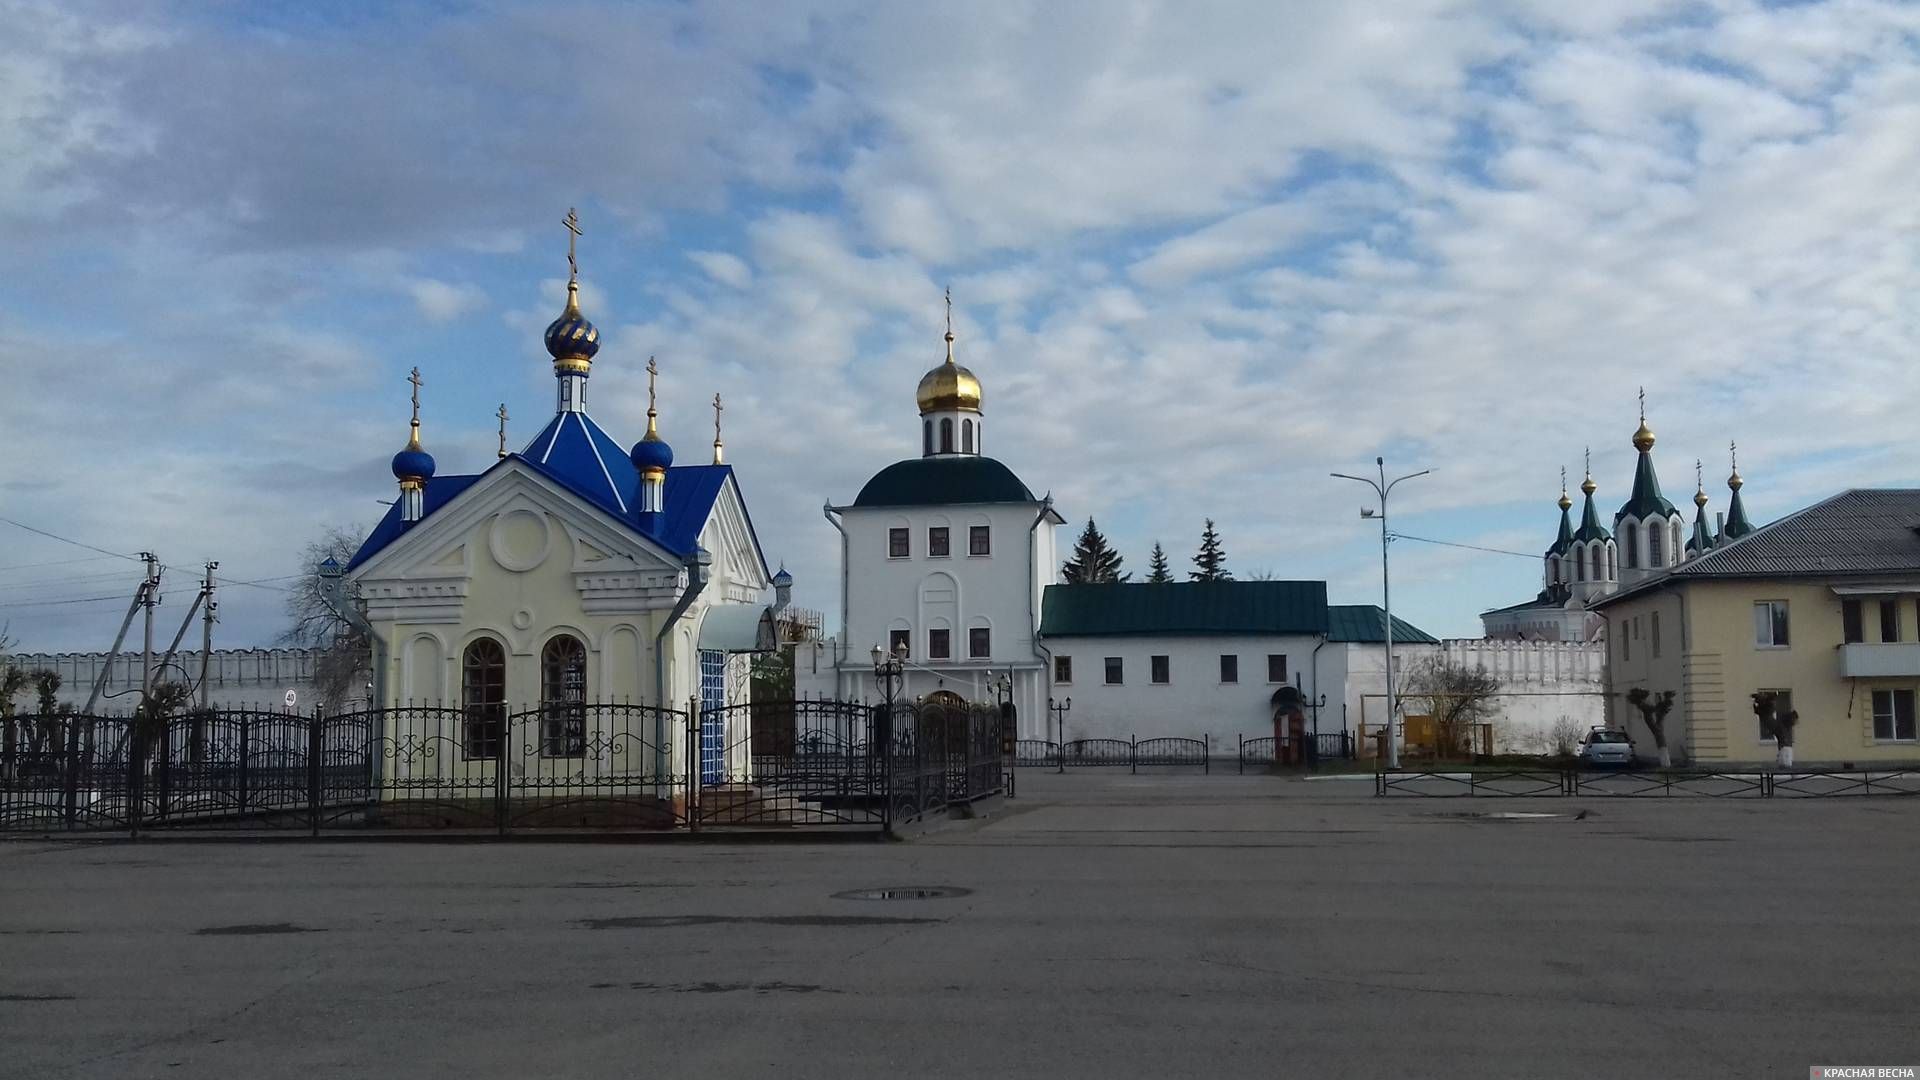 Центральная площадь города Далматово. Часовня и монастырь